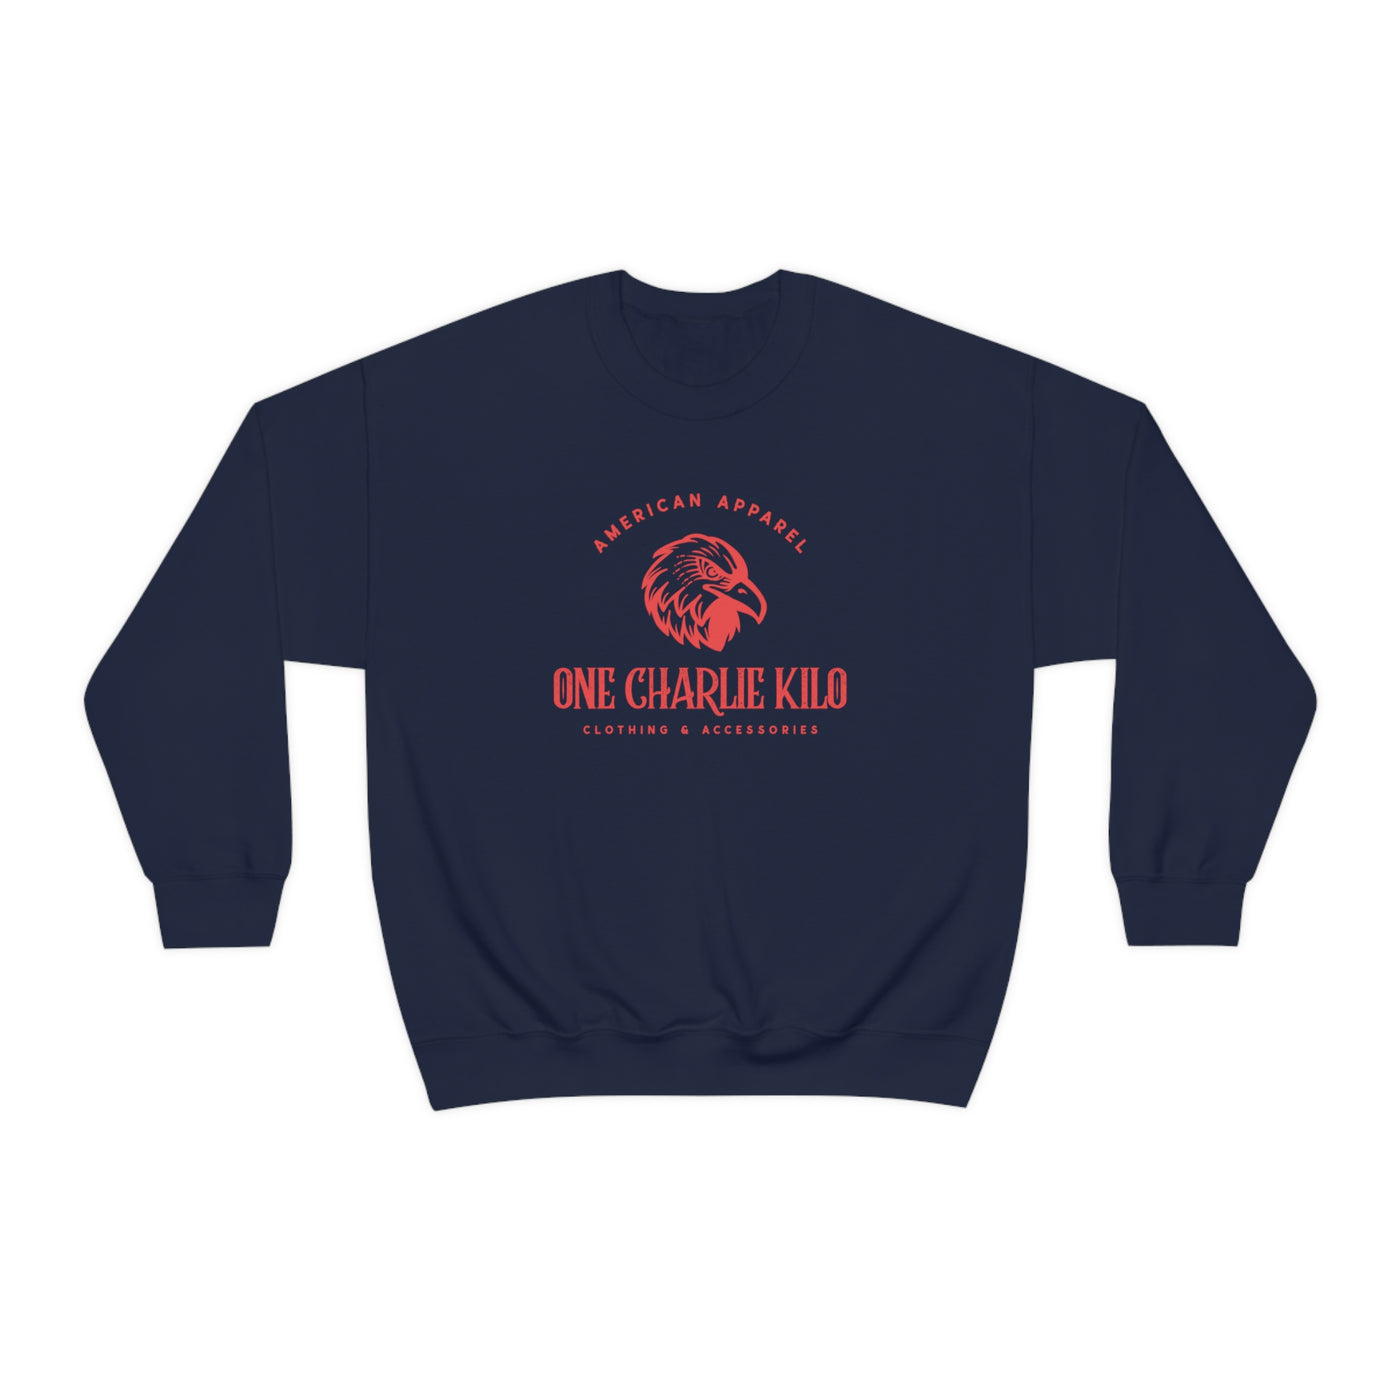 One Charlie Kilo Crewneck Sweatshirt